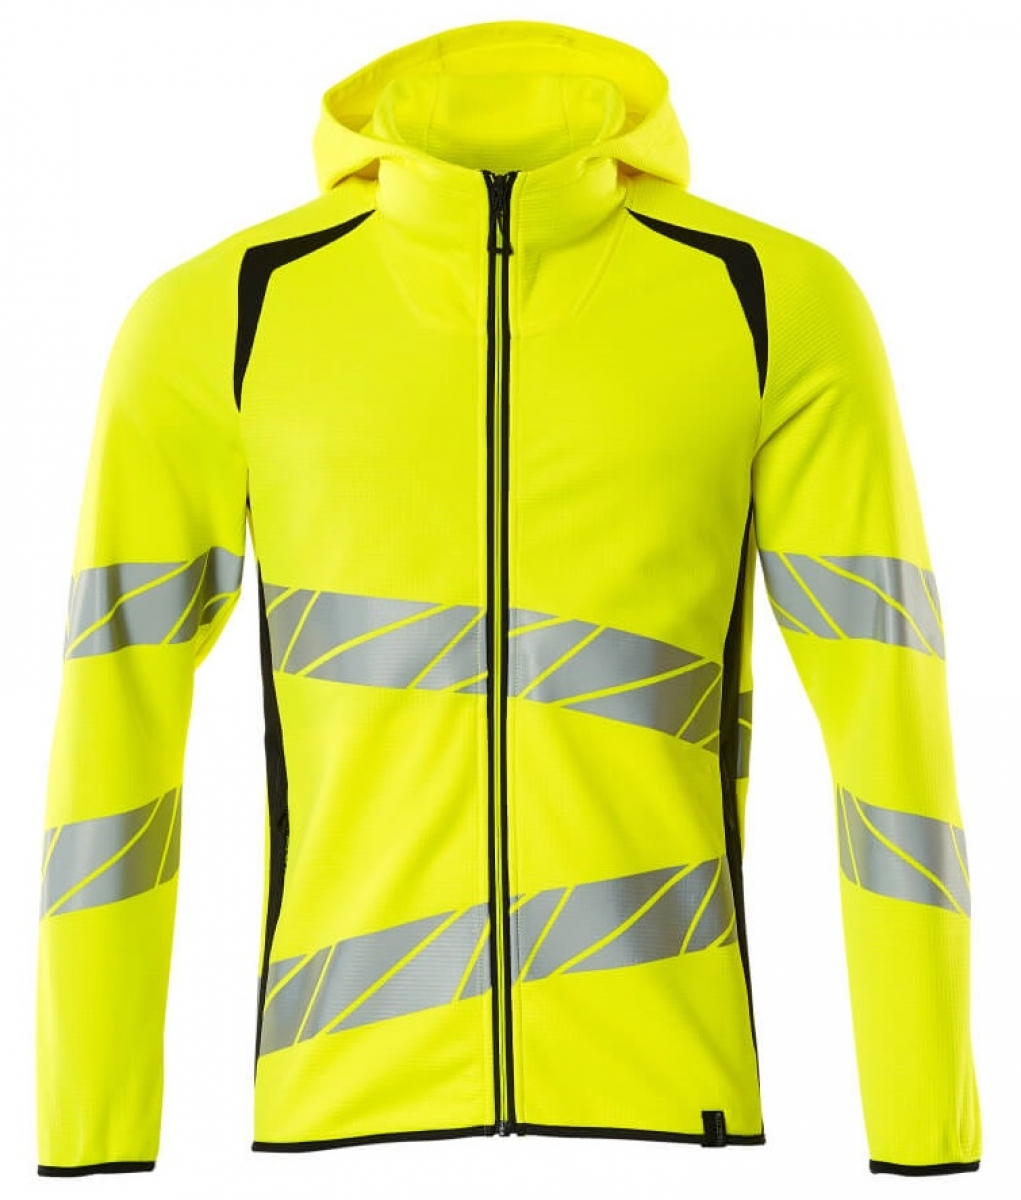 MASCOT-Workwear, Warnschutz-Kapuzen-Sweatshirt, ACCELERATE SAFE, high vis gelb/schwarzblau